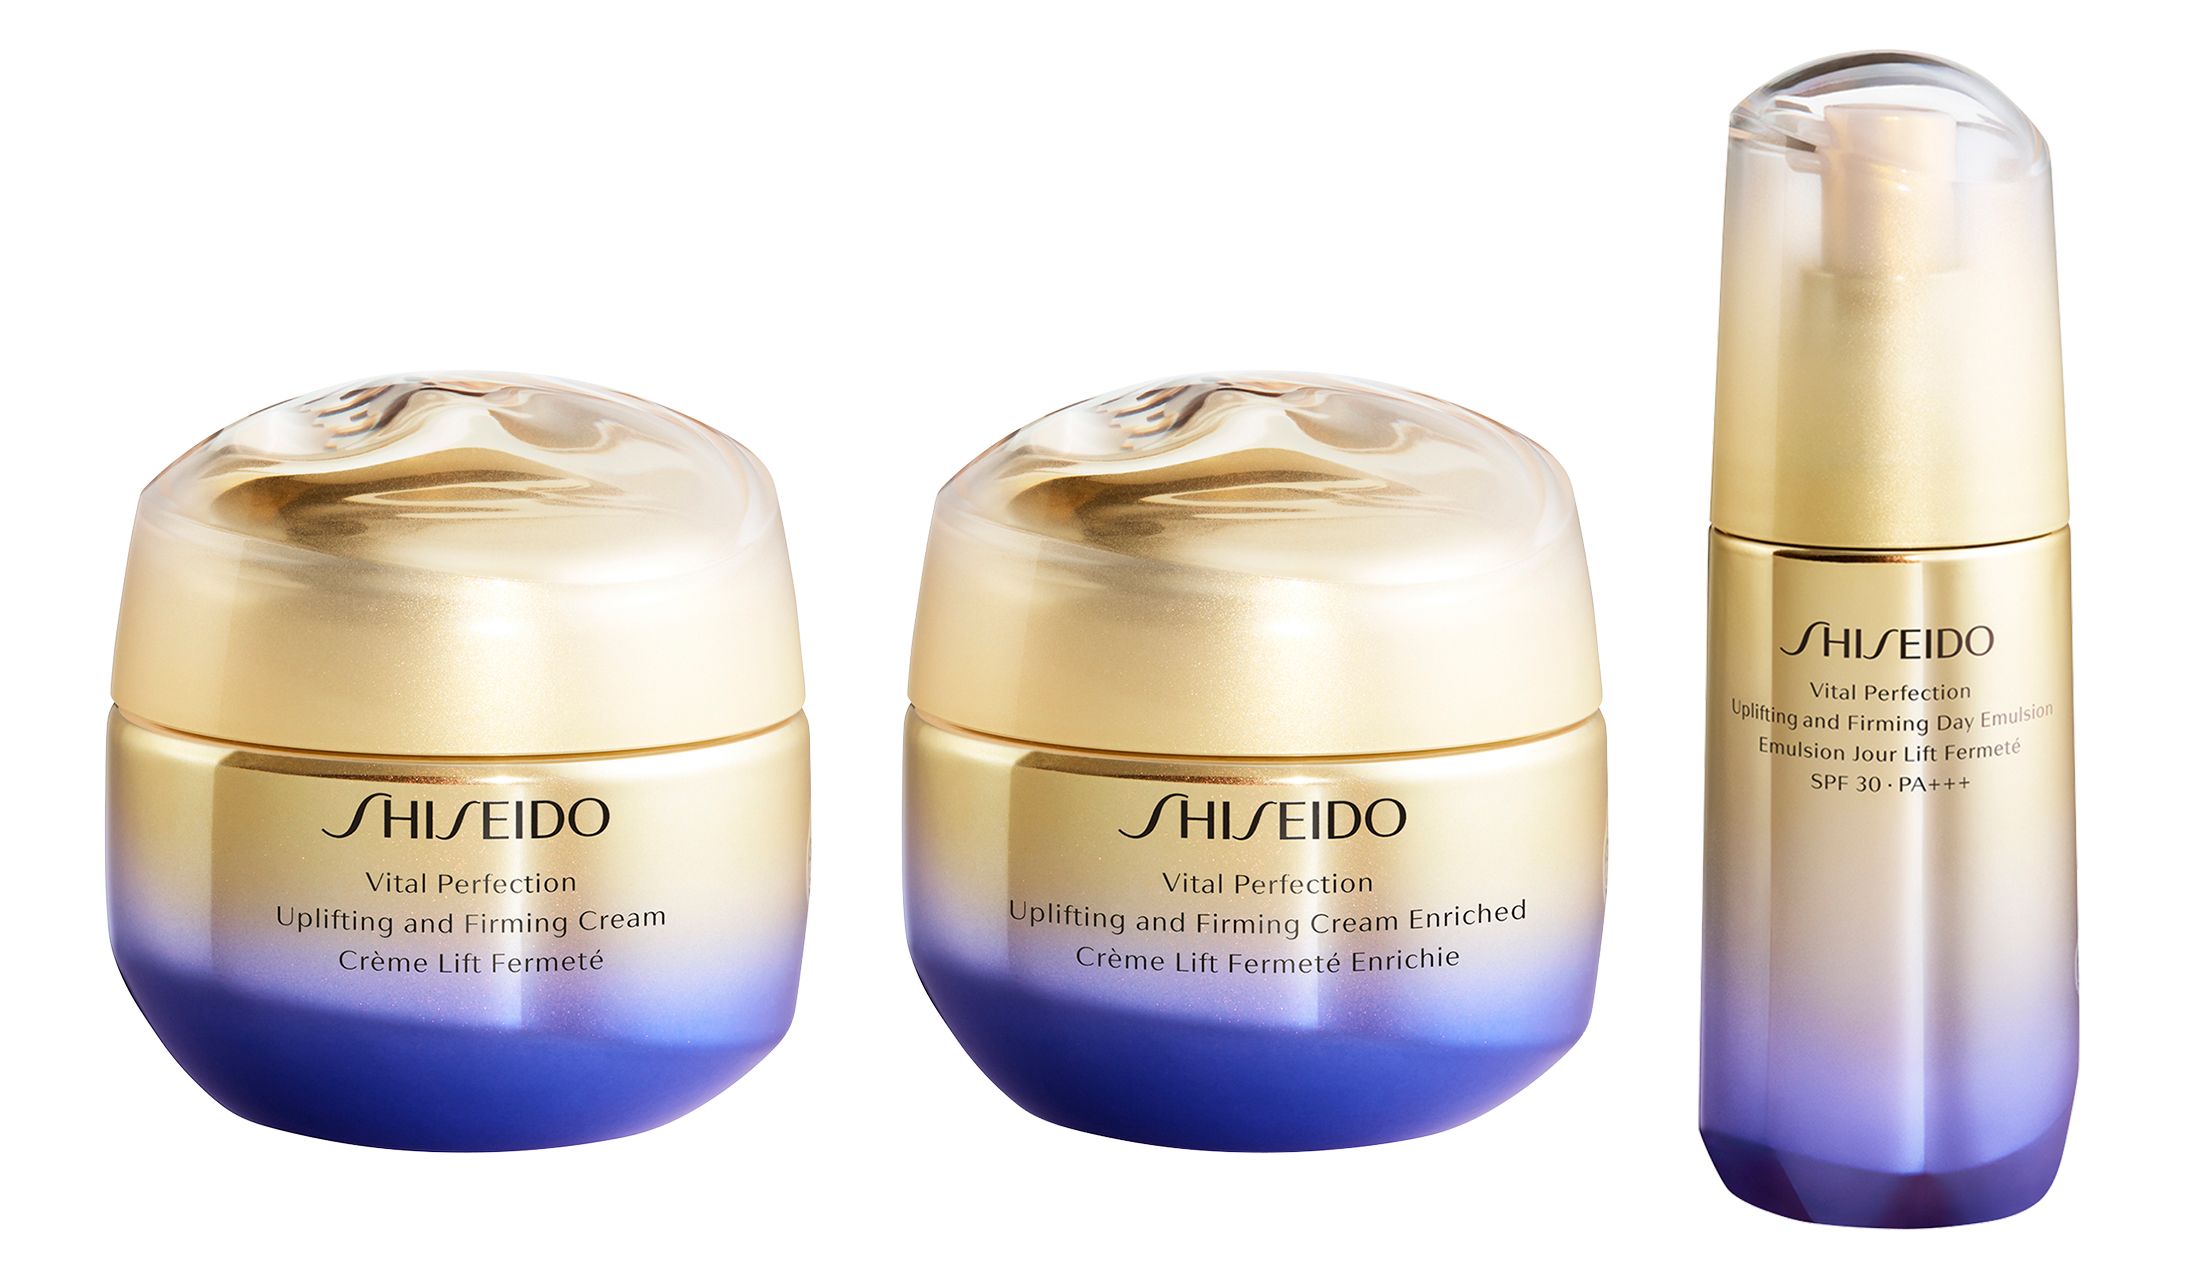 ハリ感アップや美白も叶える Shiseido から新作のクリーム 日中用乳液が登場 Precious Jp プレシャス